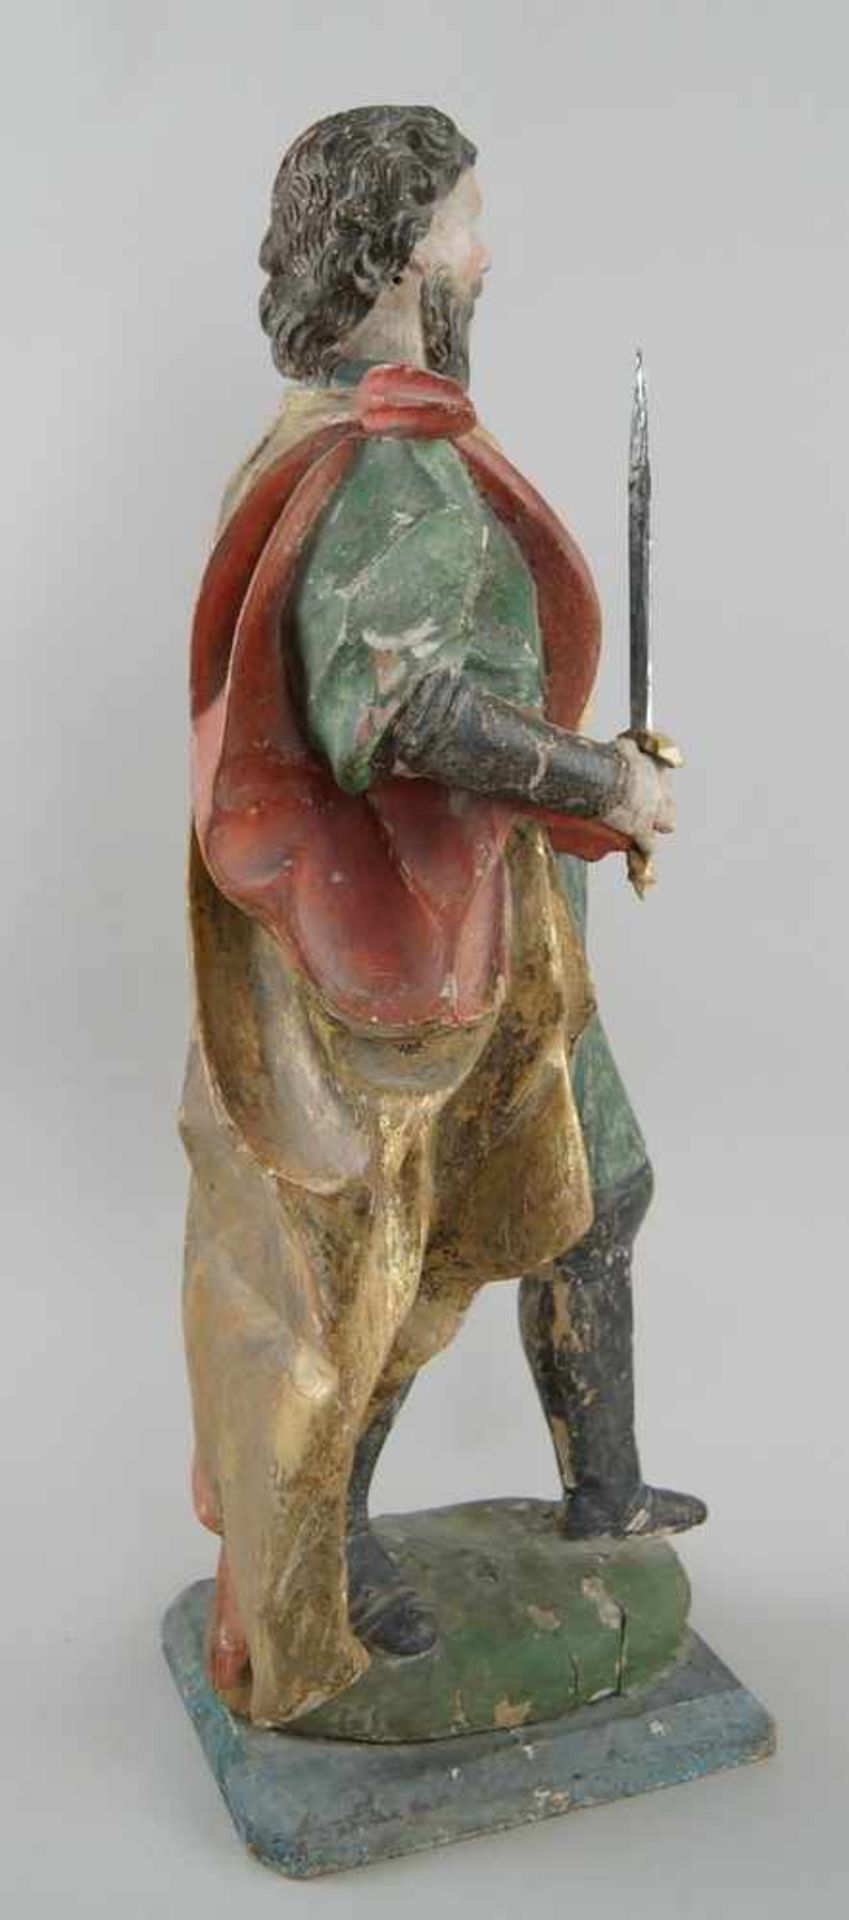 Stehender König, Holz geschnitzte und gefasste Skulptur, 18. JH, H 58 cm- - -24.00 % buyer's premium - Bild 6 aus 7